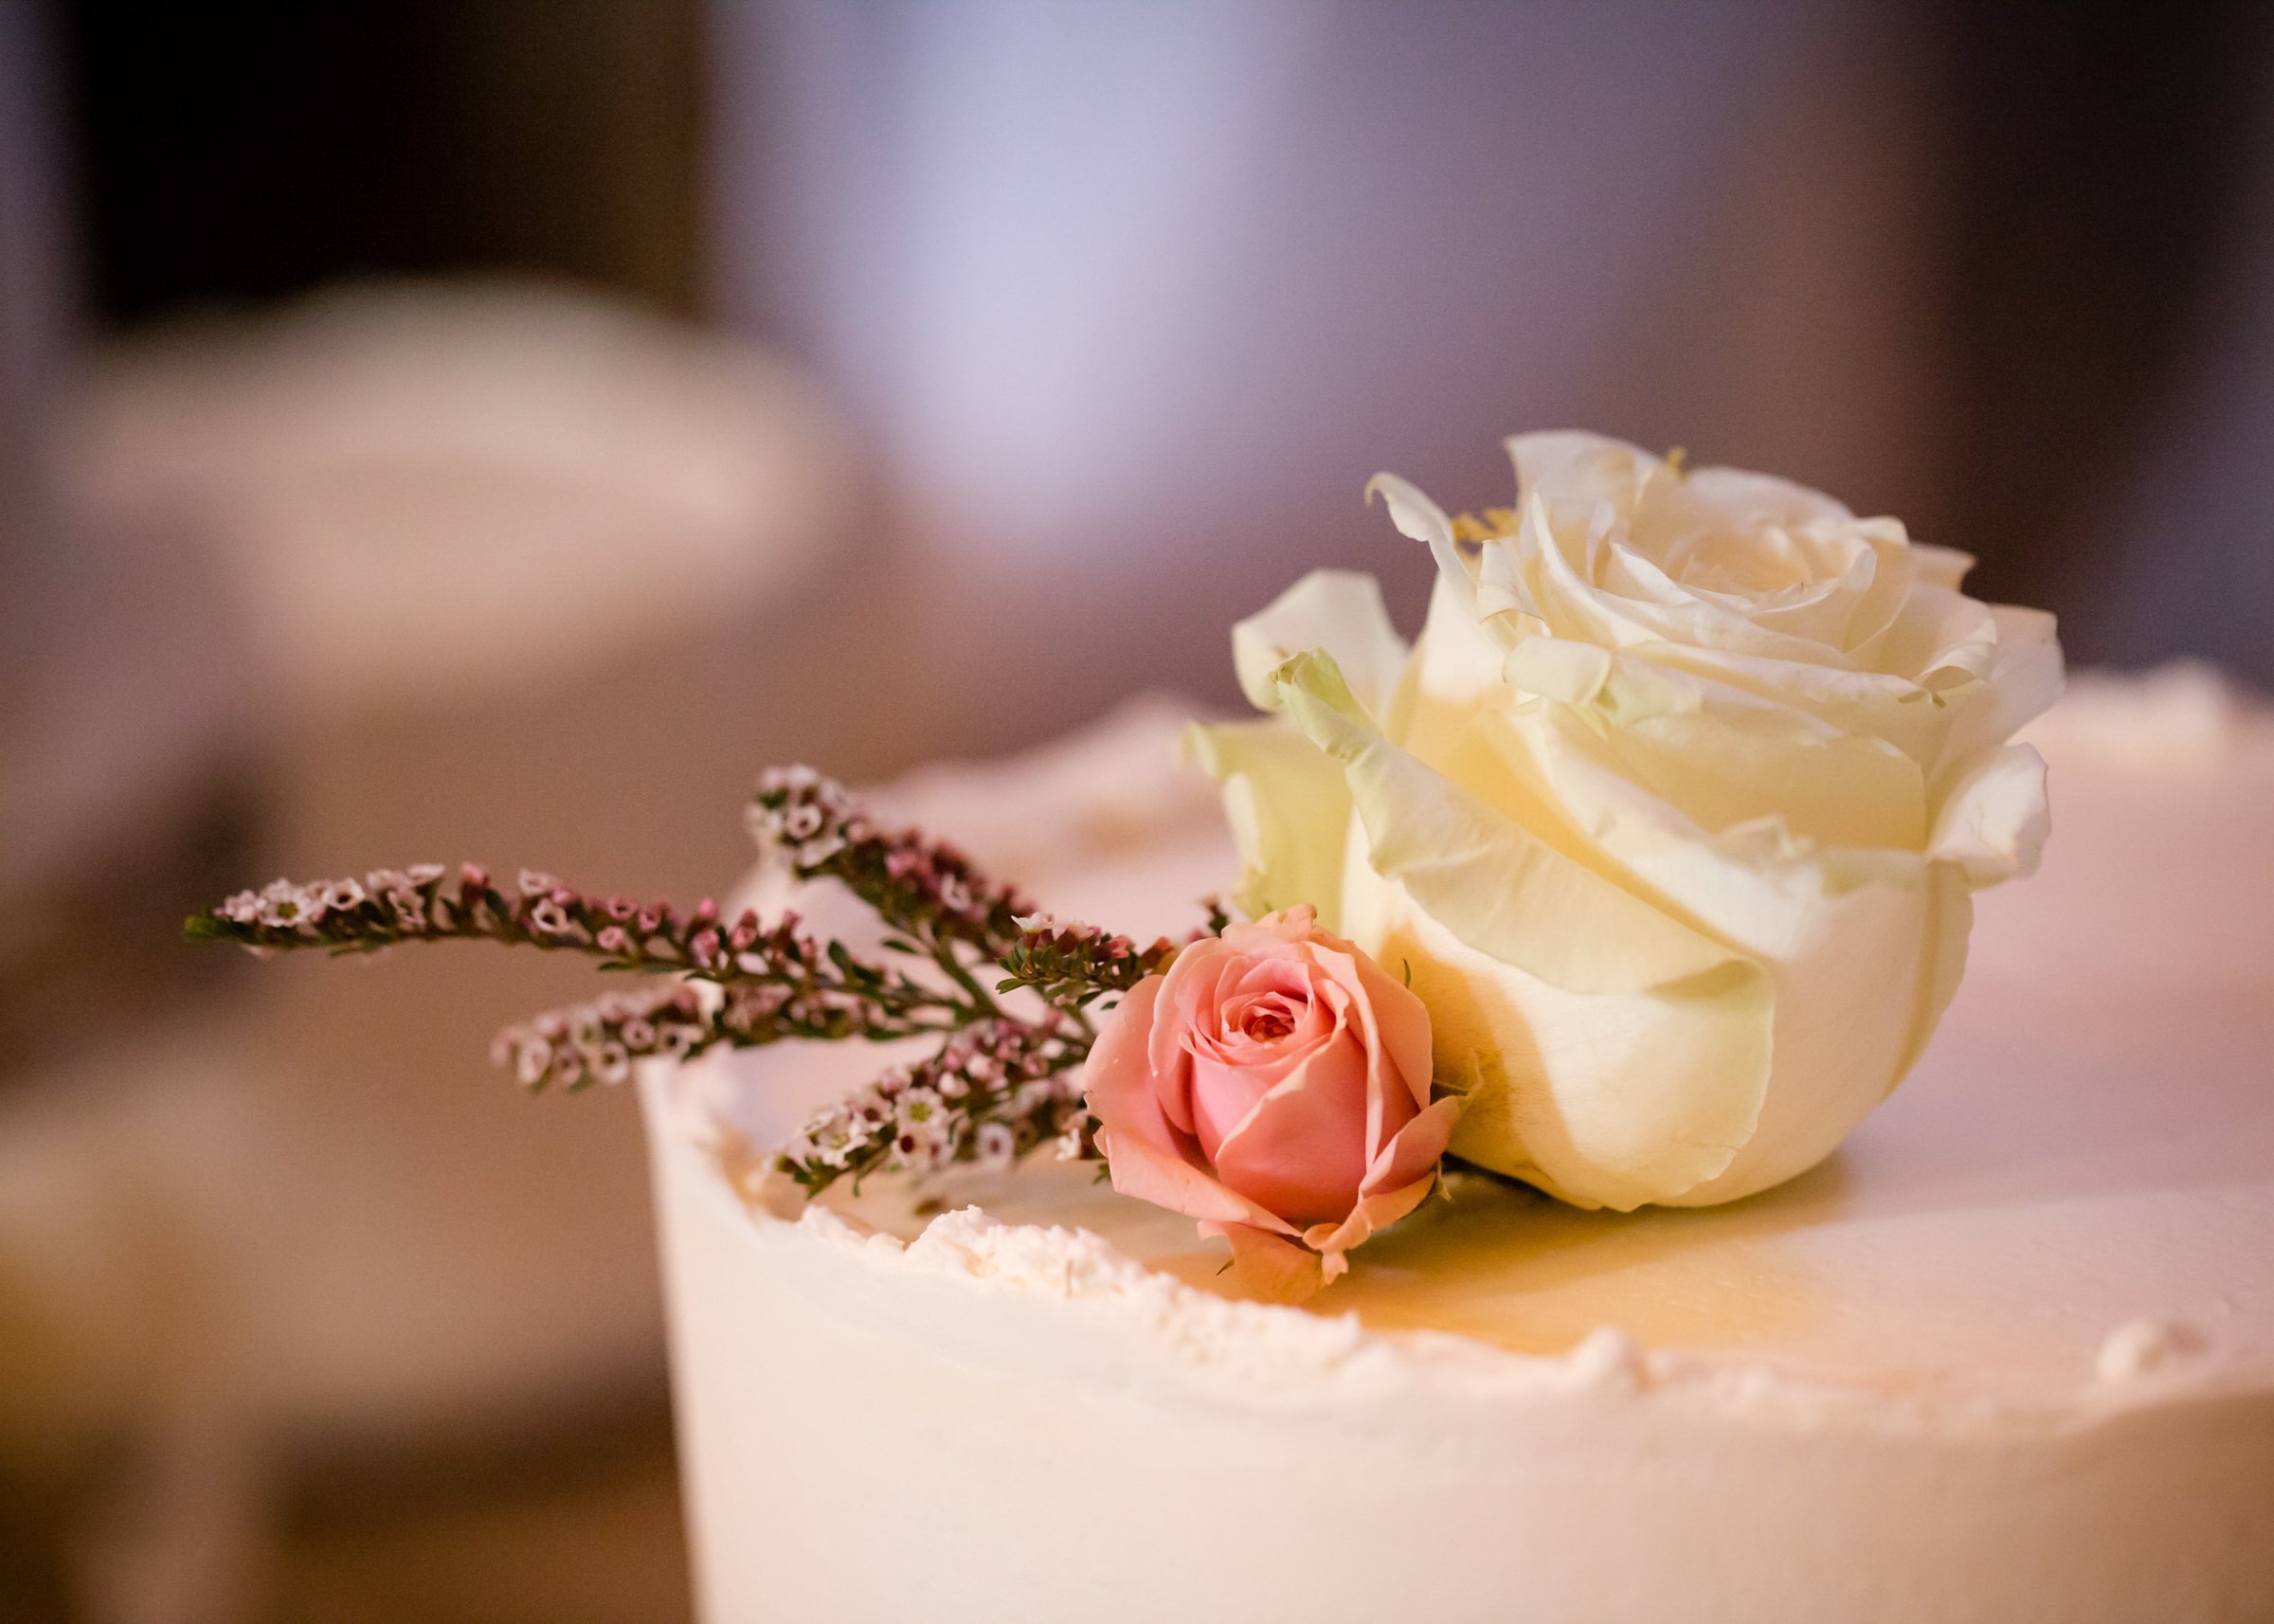 wedding_cake_detail_flower.jpg